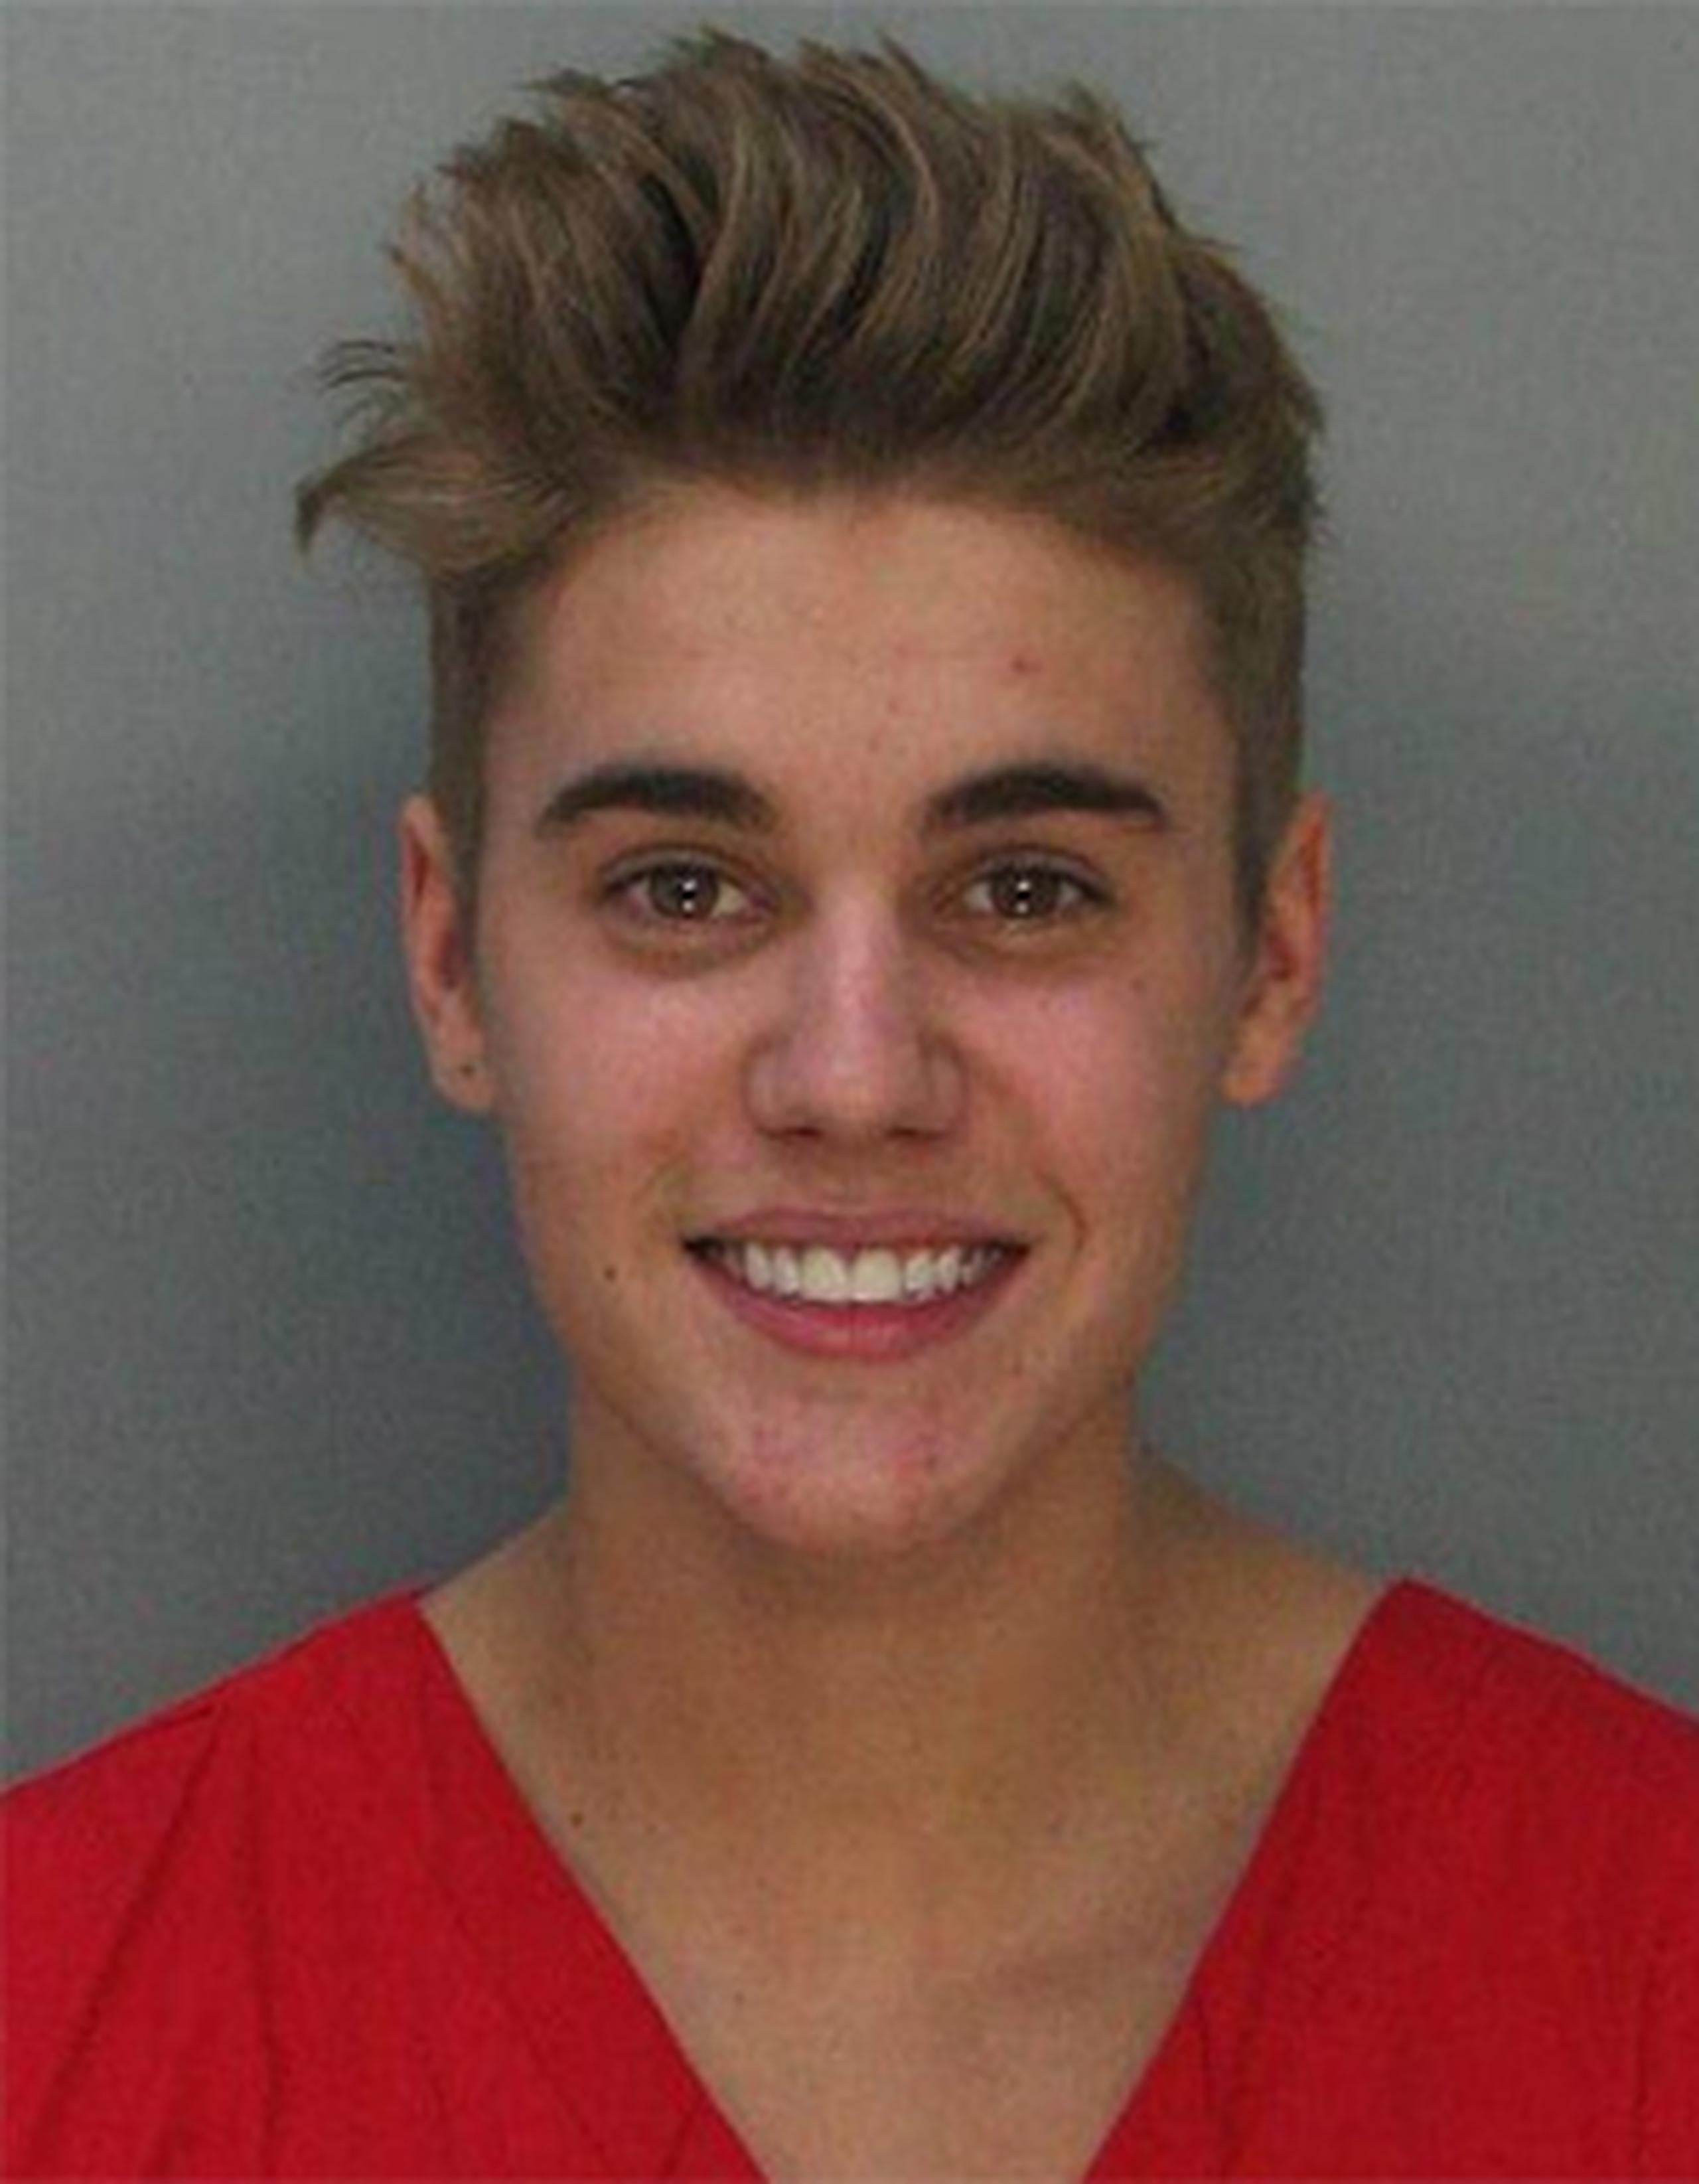 Tan reciente como la semana pasada, Bieber fue señalado por su consumo excesivo de drogas ilícitas. (Prensa Asociada)